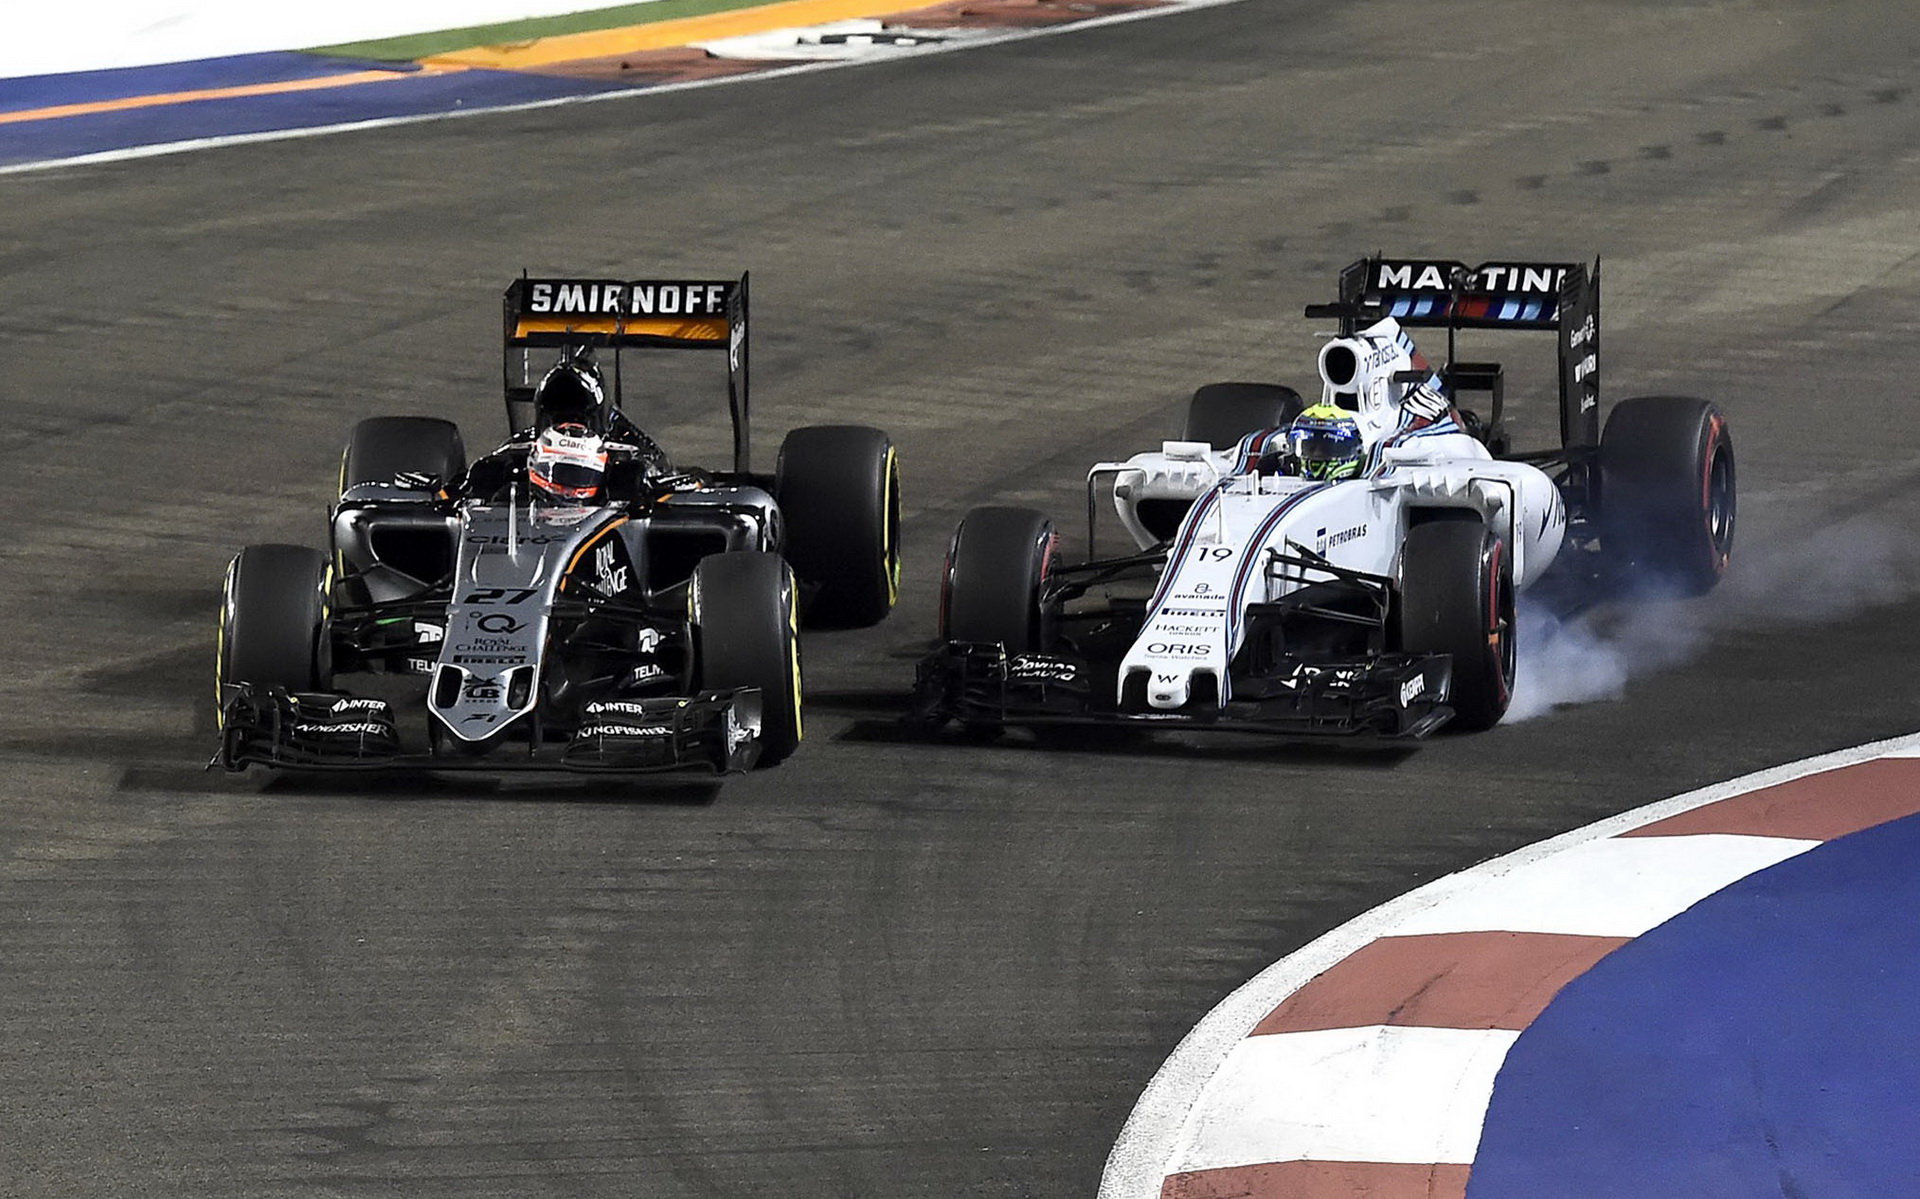 Nico Hülkenberg a Felipe Massa; Němec dostal za nehodu penalizaci ztráty 3 míst na startu VC Japonska